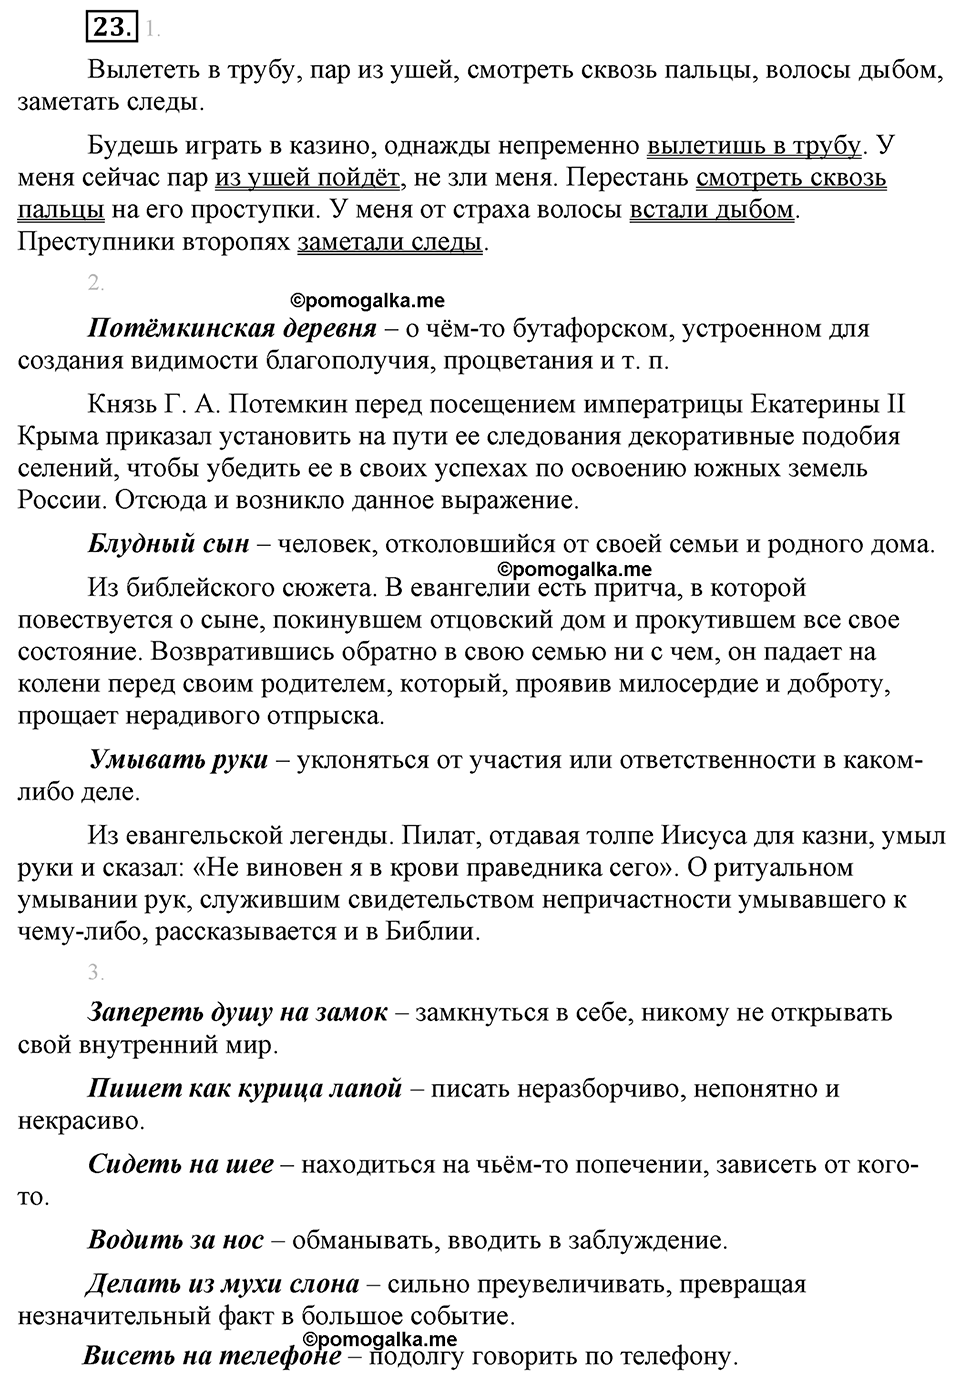 страница 16 упражнение 23 русский язык 8 класс Львова, Львов 2014 год